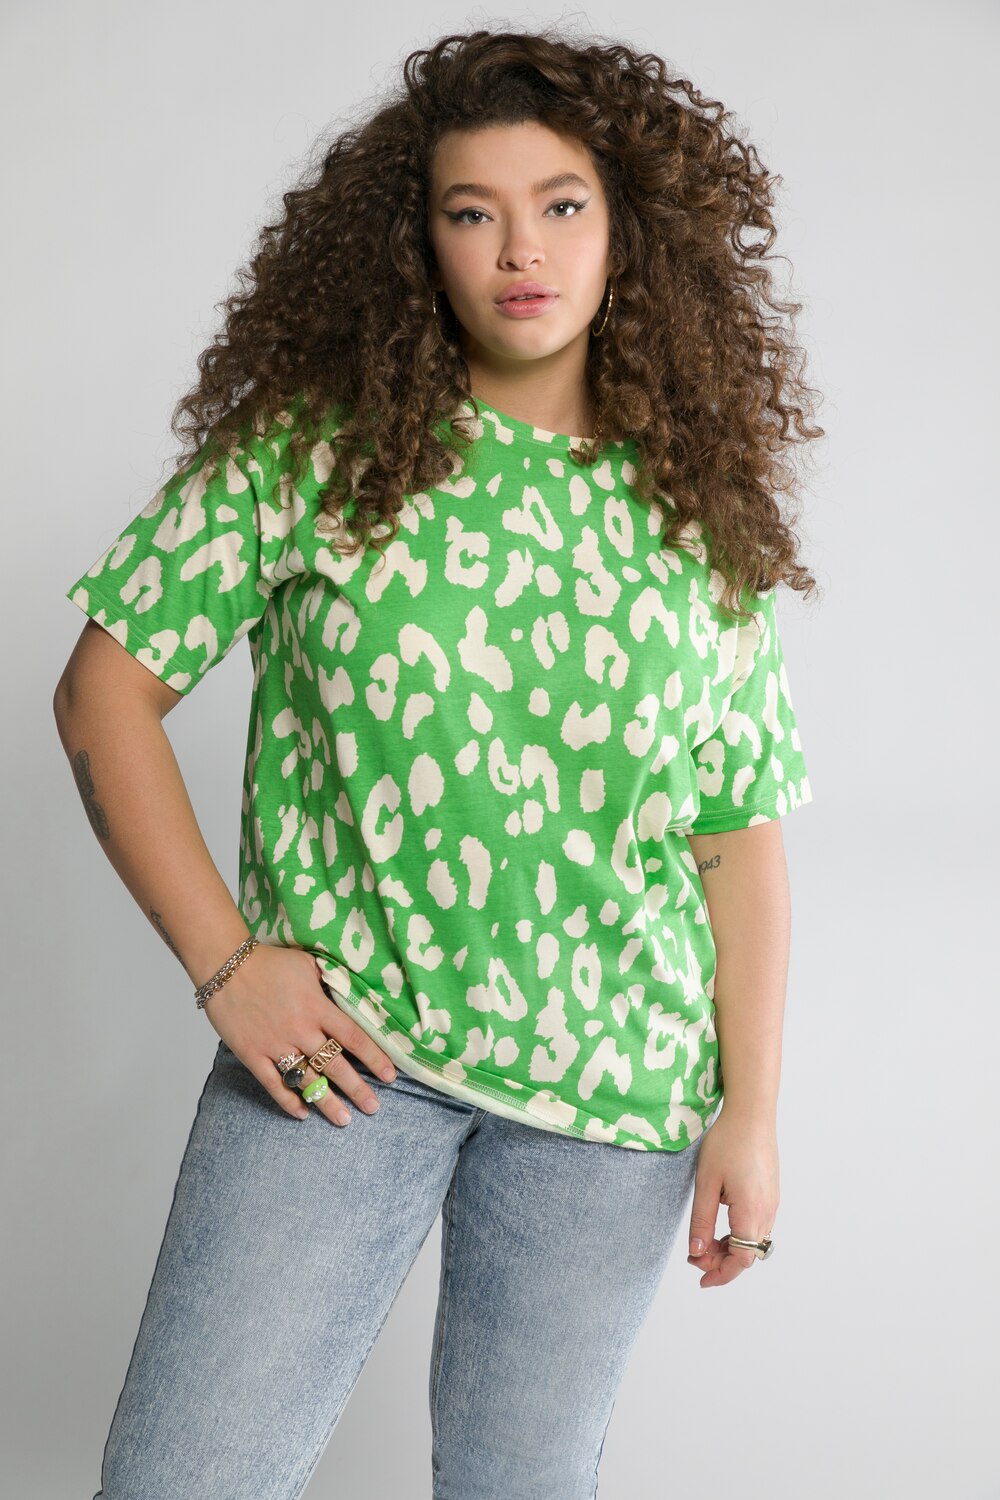 Grote Maten T-shirt, Dames, groen, Maat: 46/48, Katoen, Studio Untold